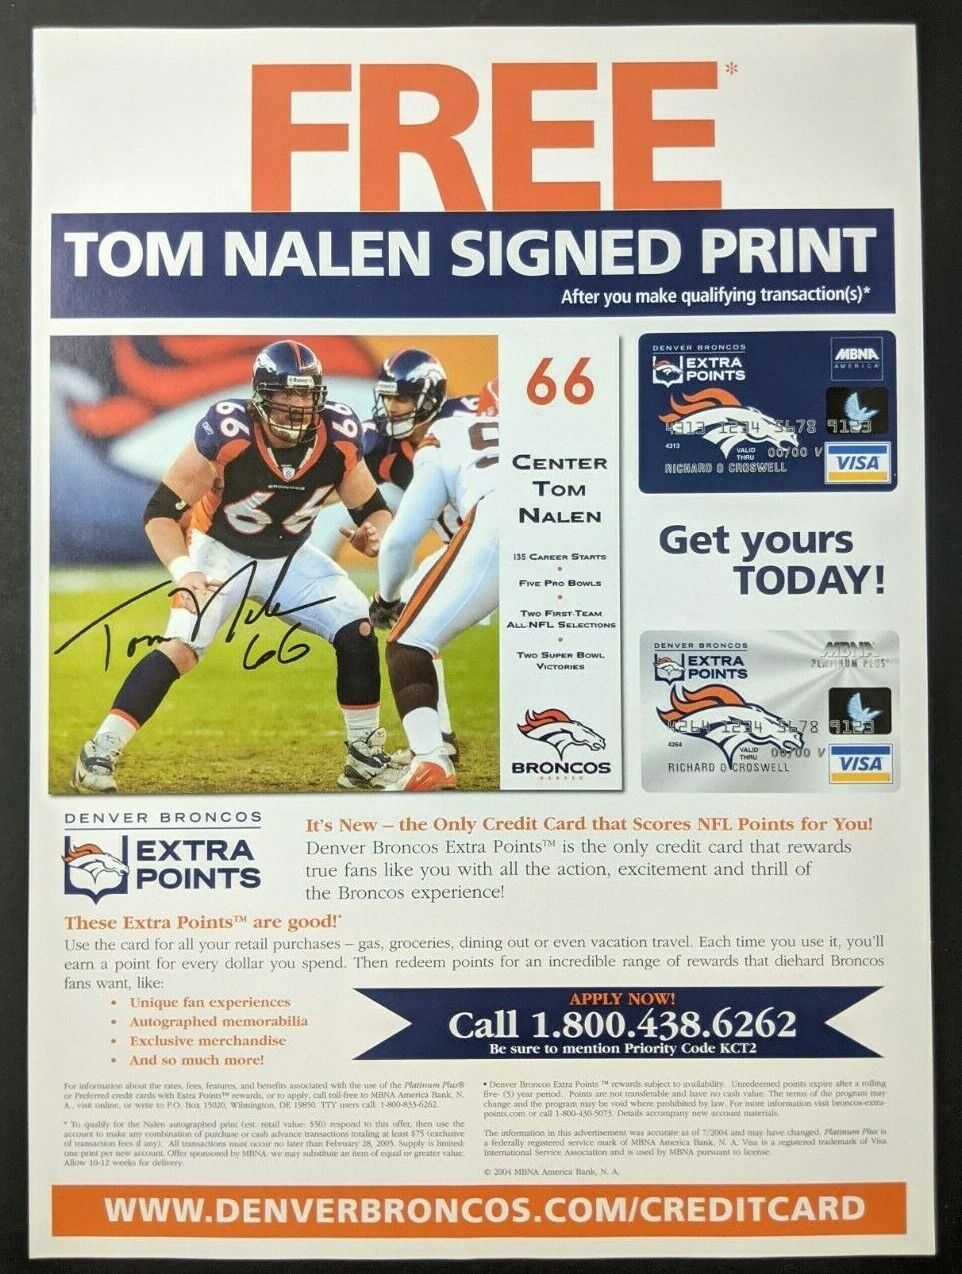 Tom Nalen Denver Broncos Credit Card Print Ad Poster Art PROMO Original MBNA